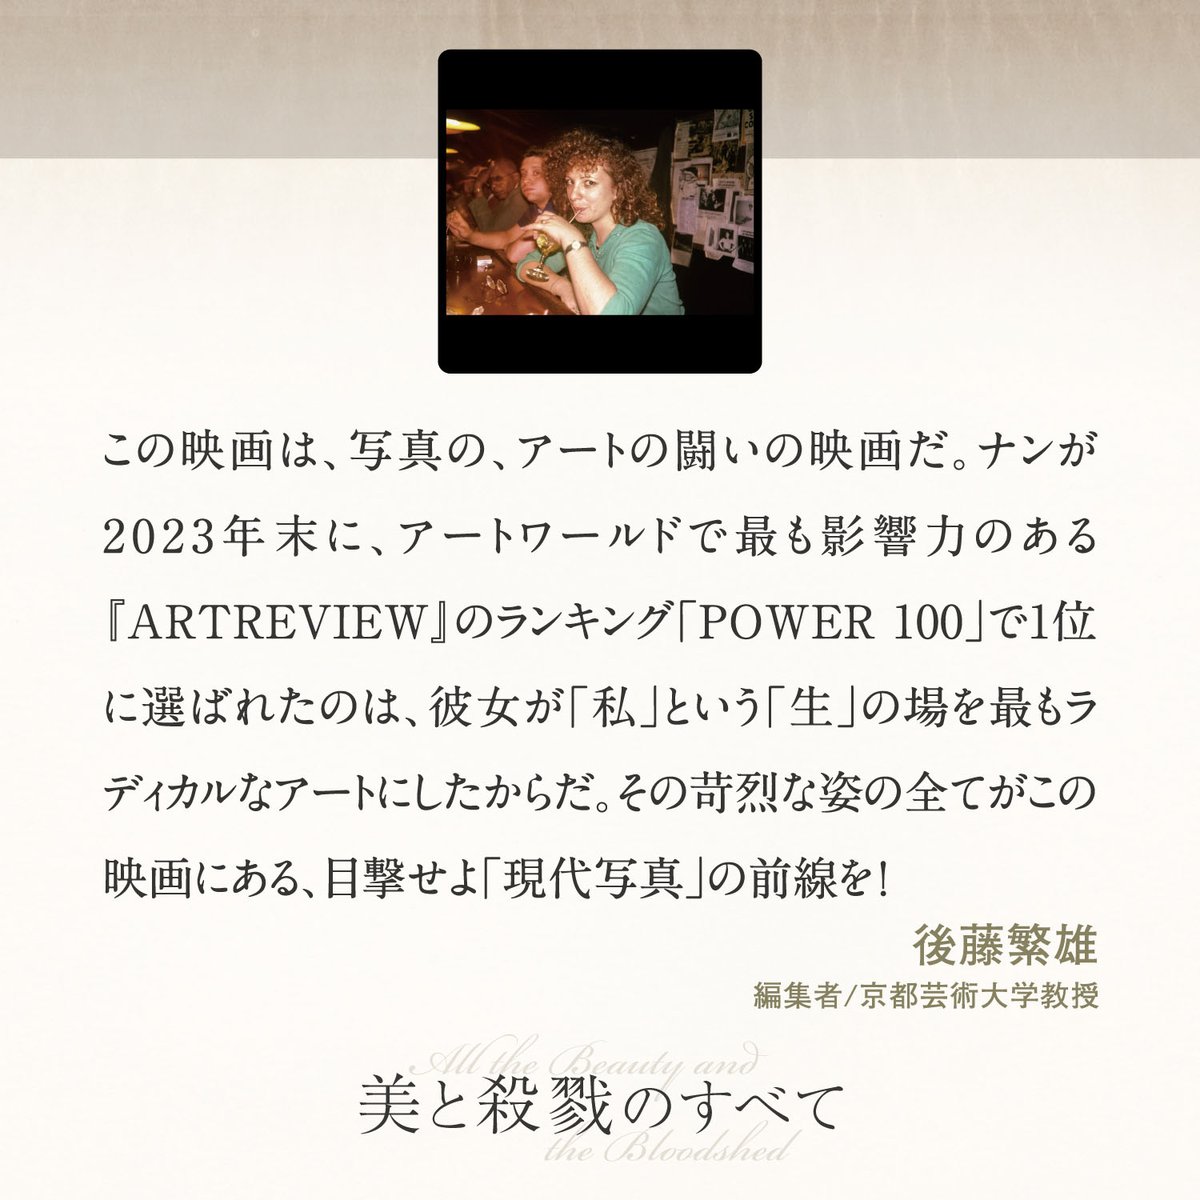 ――𝐶𝑂𝑀𝑀𝐸𝑁𝑇――
後藤繁雄｜編集者/京都芸術大学教授
@gotonewdirect
この映画は、写真の、アートの闘いの映画だ。ナンが2023年末に、アートワールドで 最も影響力のある『ArtReview』のランキング「Power 100」で1位に選ばれたのは、